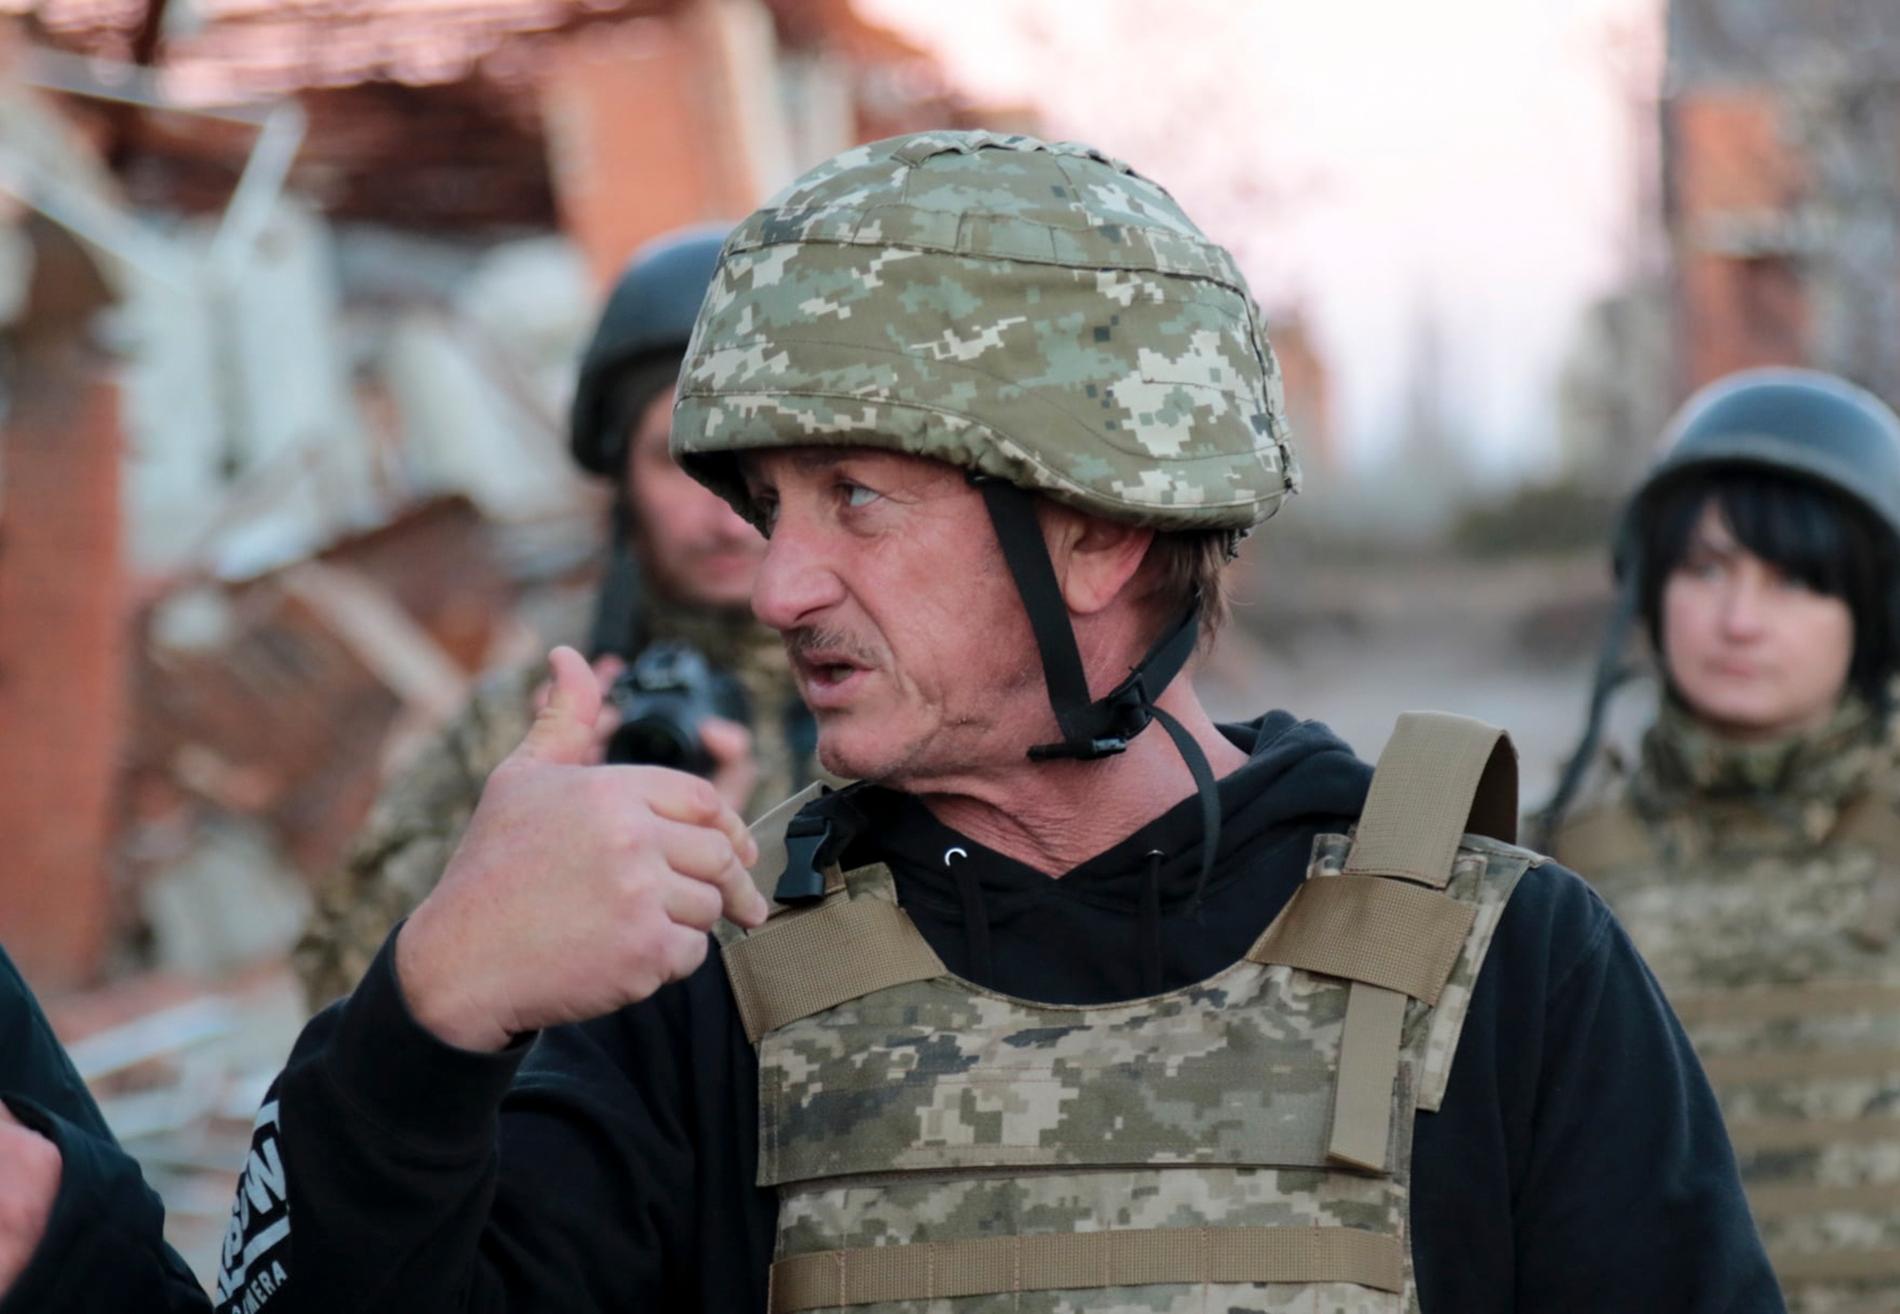 Hollywoodskådespelaren och producenten Sean Penn har åkt till Ukraina för att spela in en dokumentärfilm. Arkivbild.